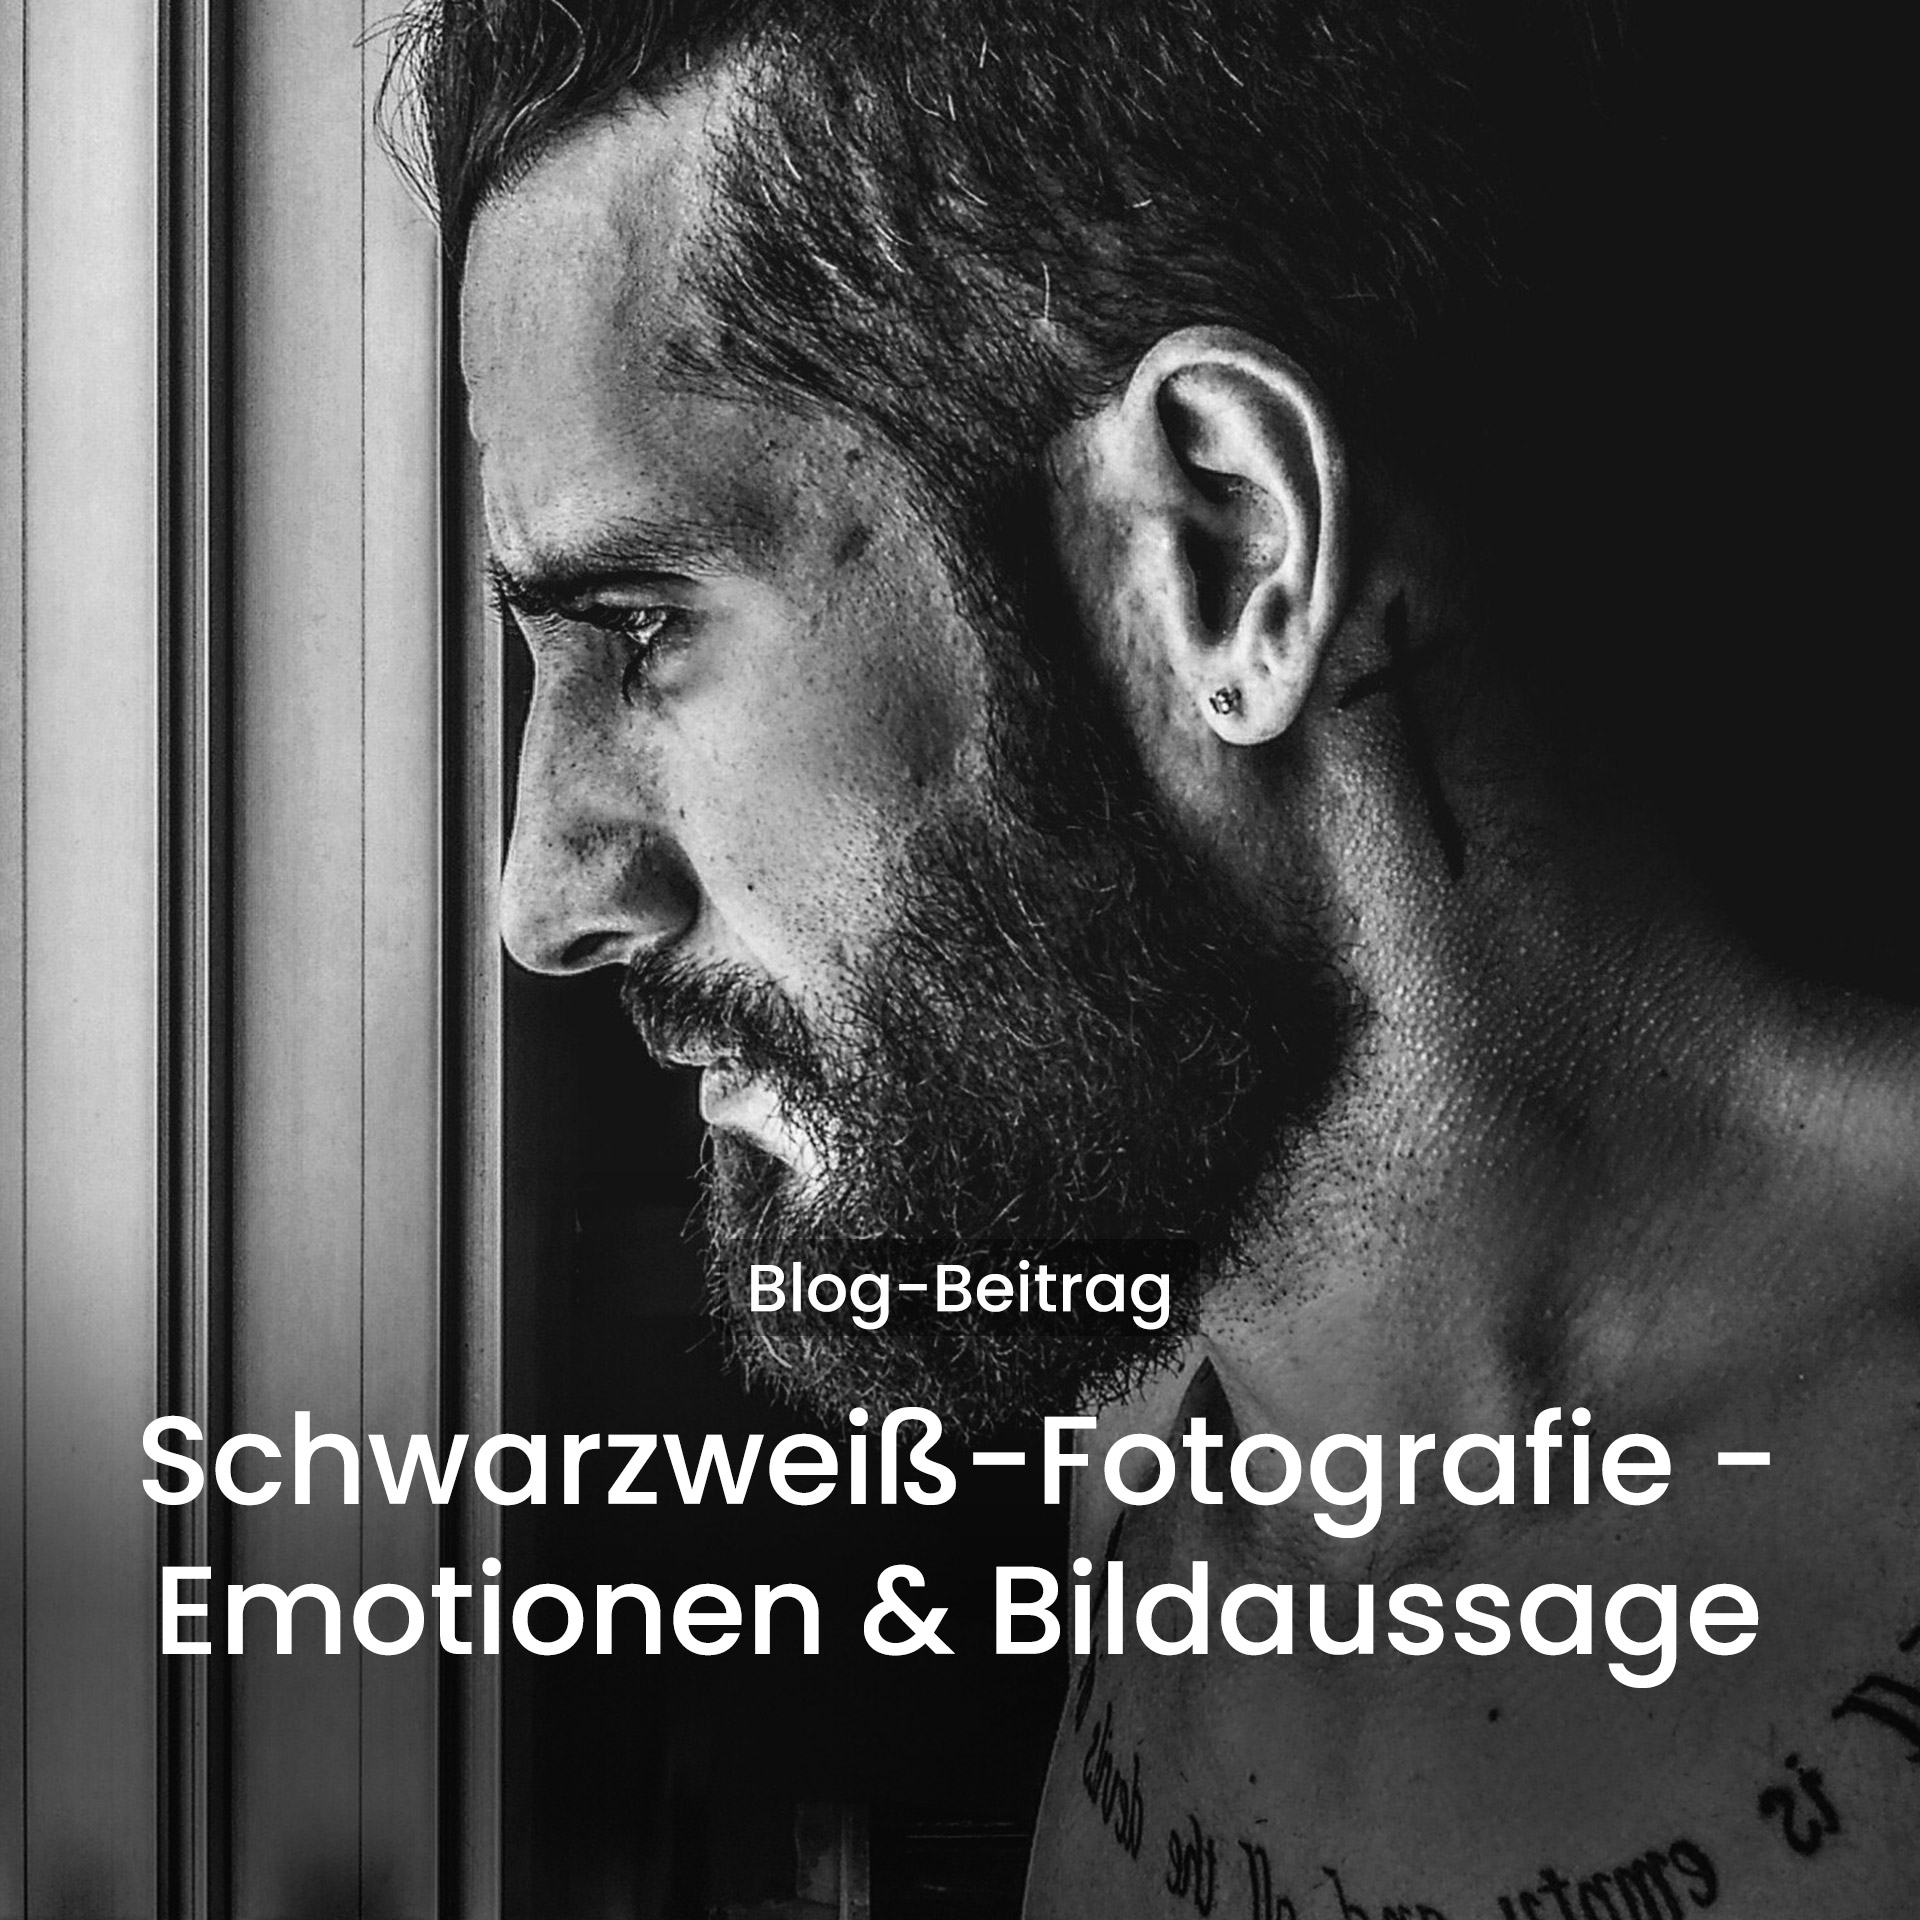 Schwarzweiß-Fotografie - Emotionen und Bildaussage